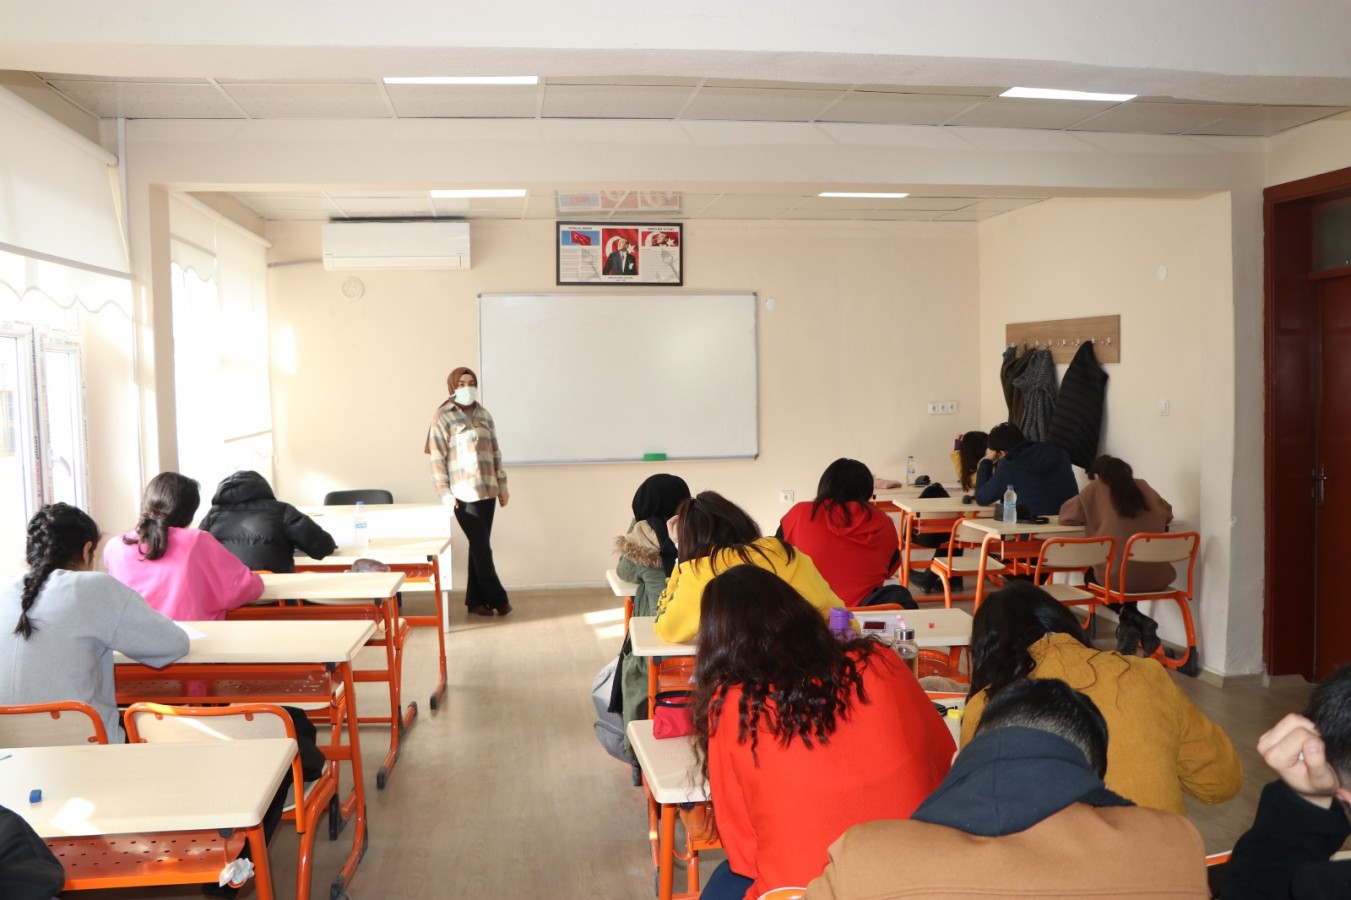 Viranşehir'de gençler sınava hazırlanıyor